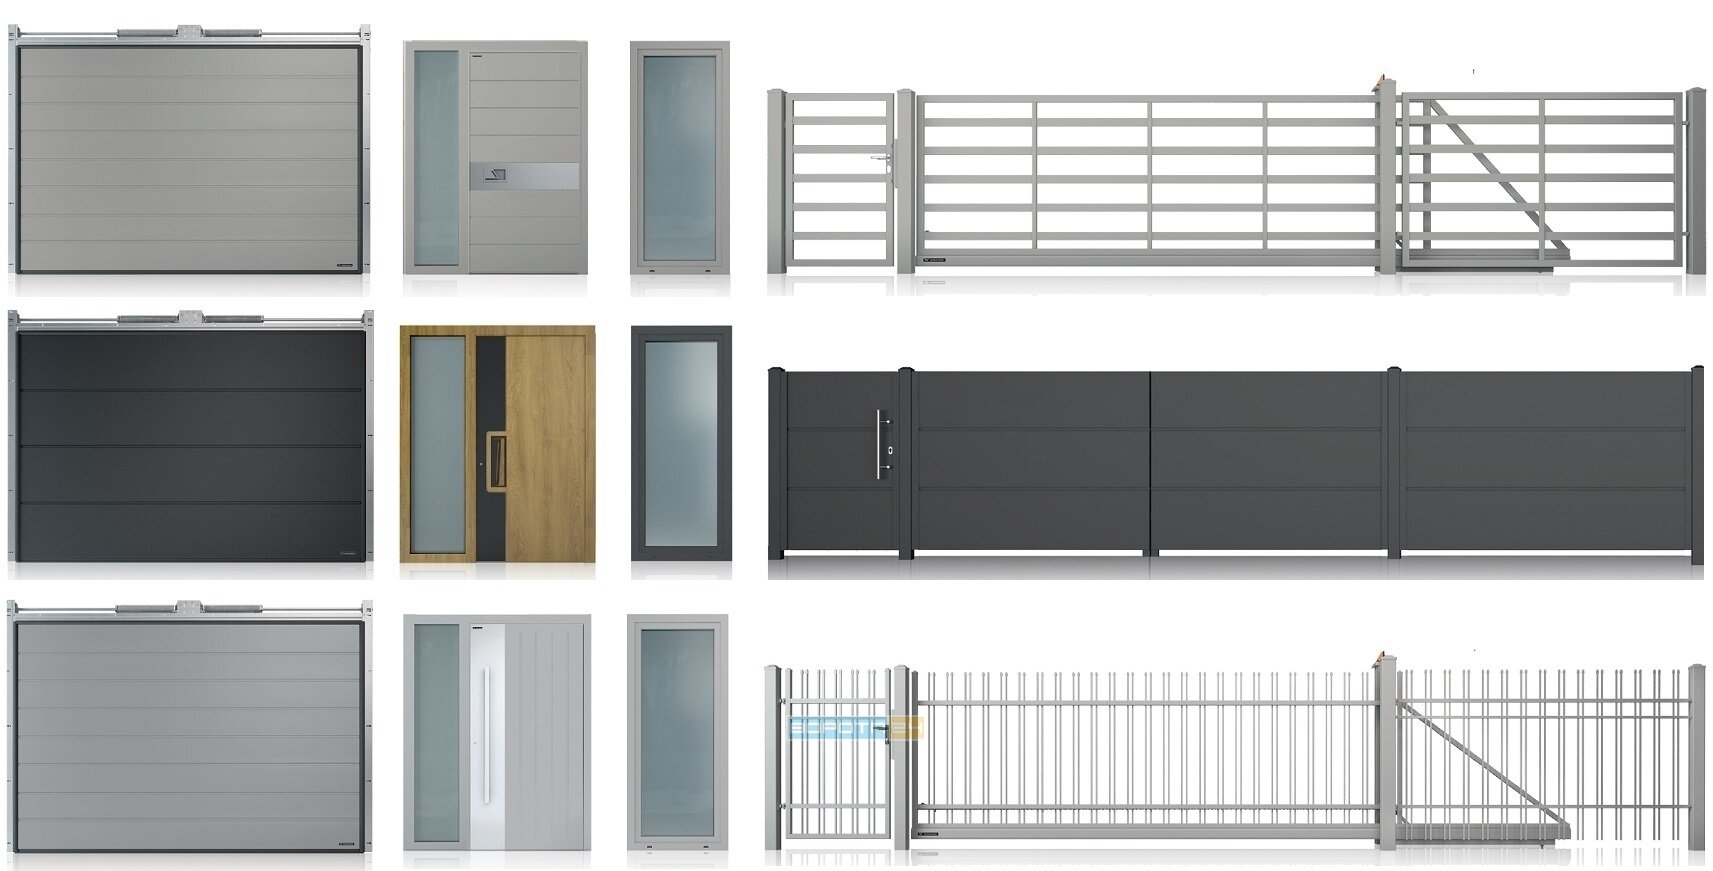 Заборы металлические оцинкованные - секционные гаражные ворота - откатные раздвижные ограждения - уличные входные двери в дом  